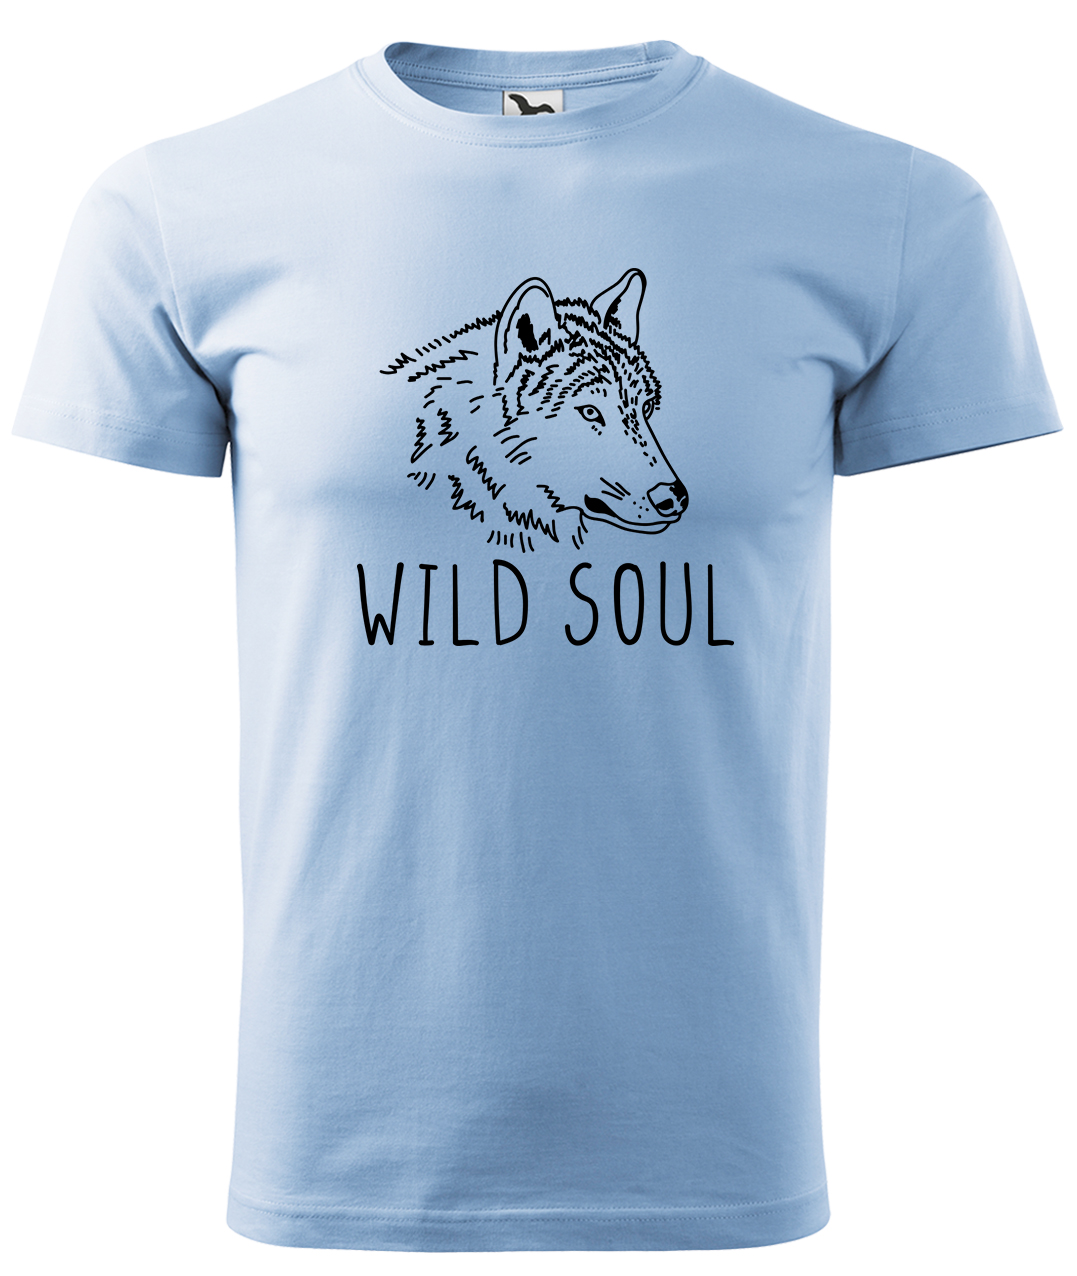 Dětské tričko s vlkem - Wild soul Velikost: 4 roky / 110 cm, Barva: Nebesky modrá (15), Délka rukávu: Krátký rukáv